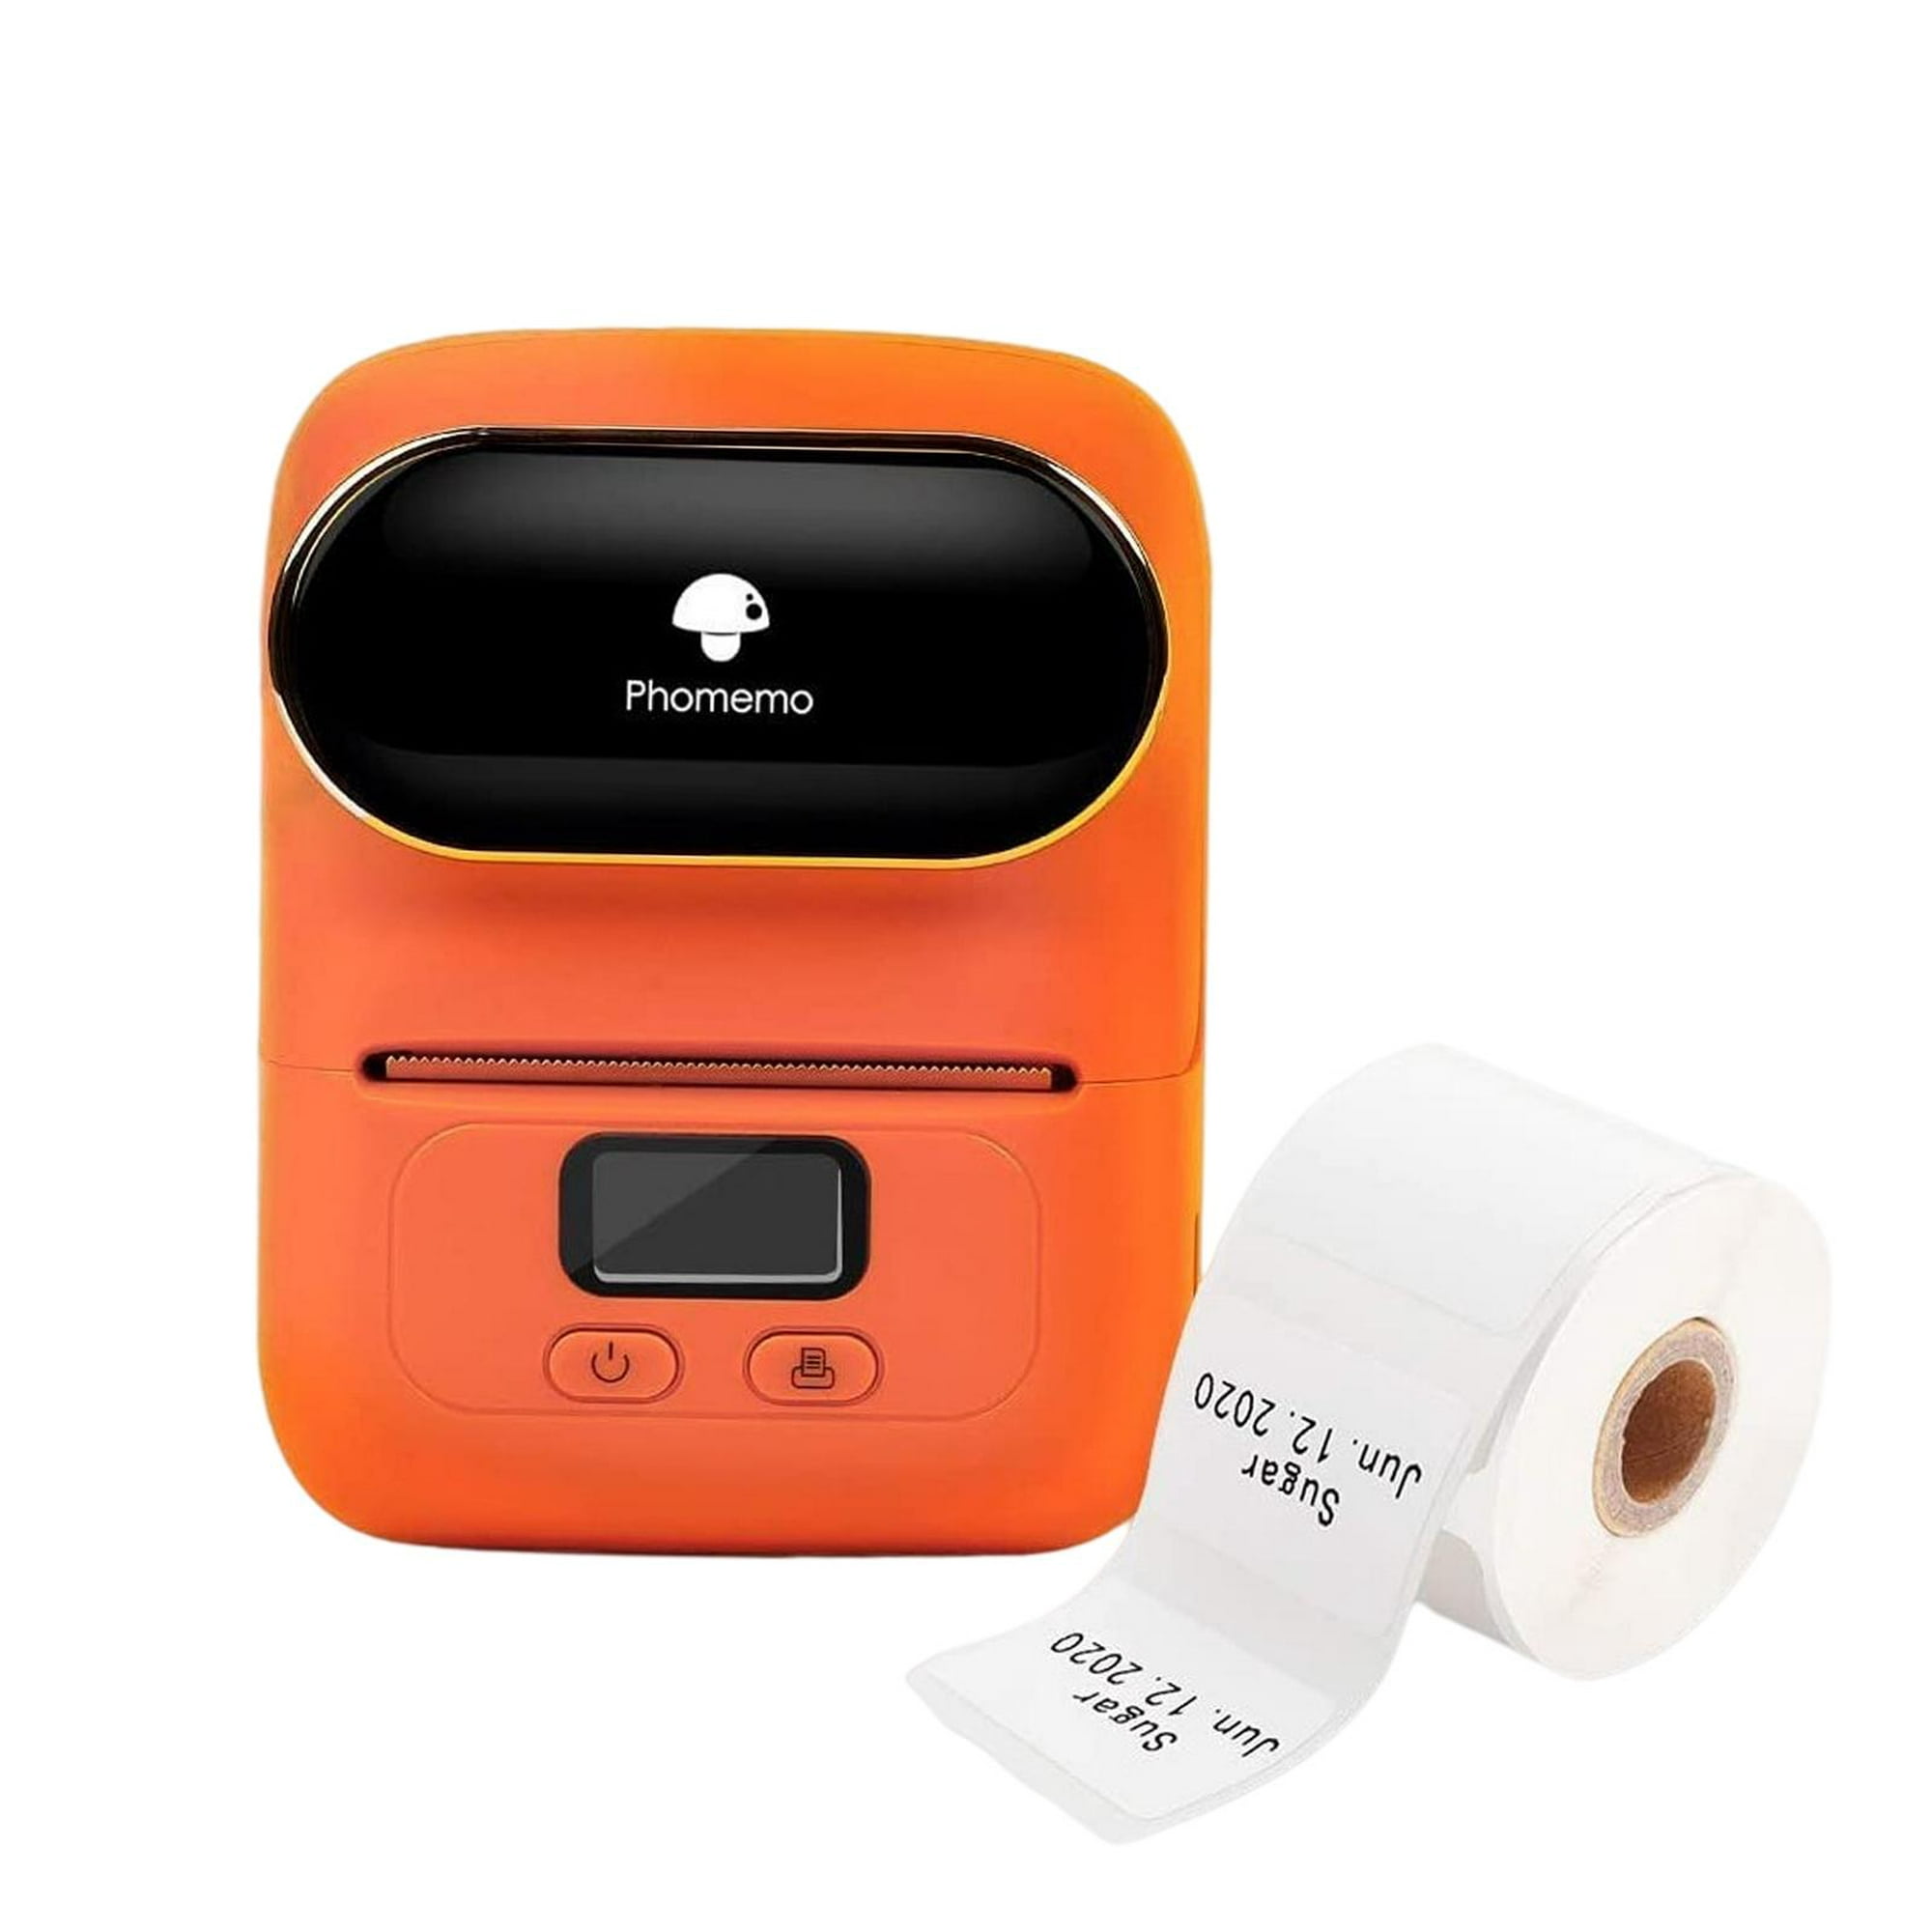 Impresora de pegatinas de máquina Label Maker con cinta, tecnología  inalámbrica y papel de marca blanca para la organización del hogar y la  oficina